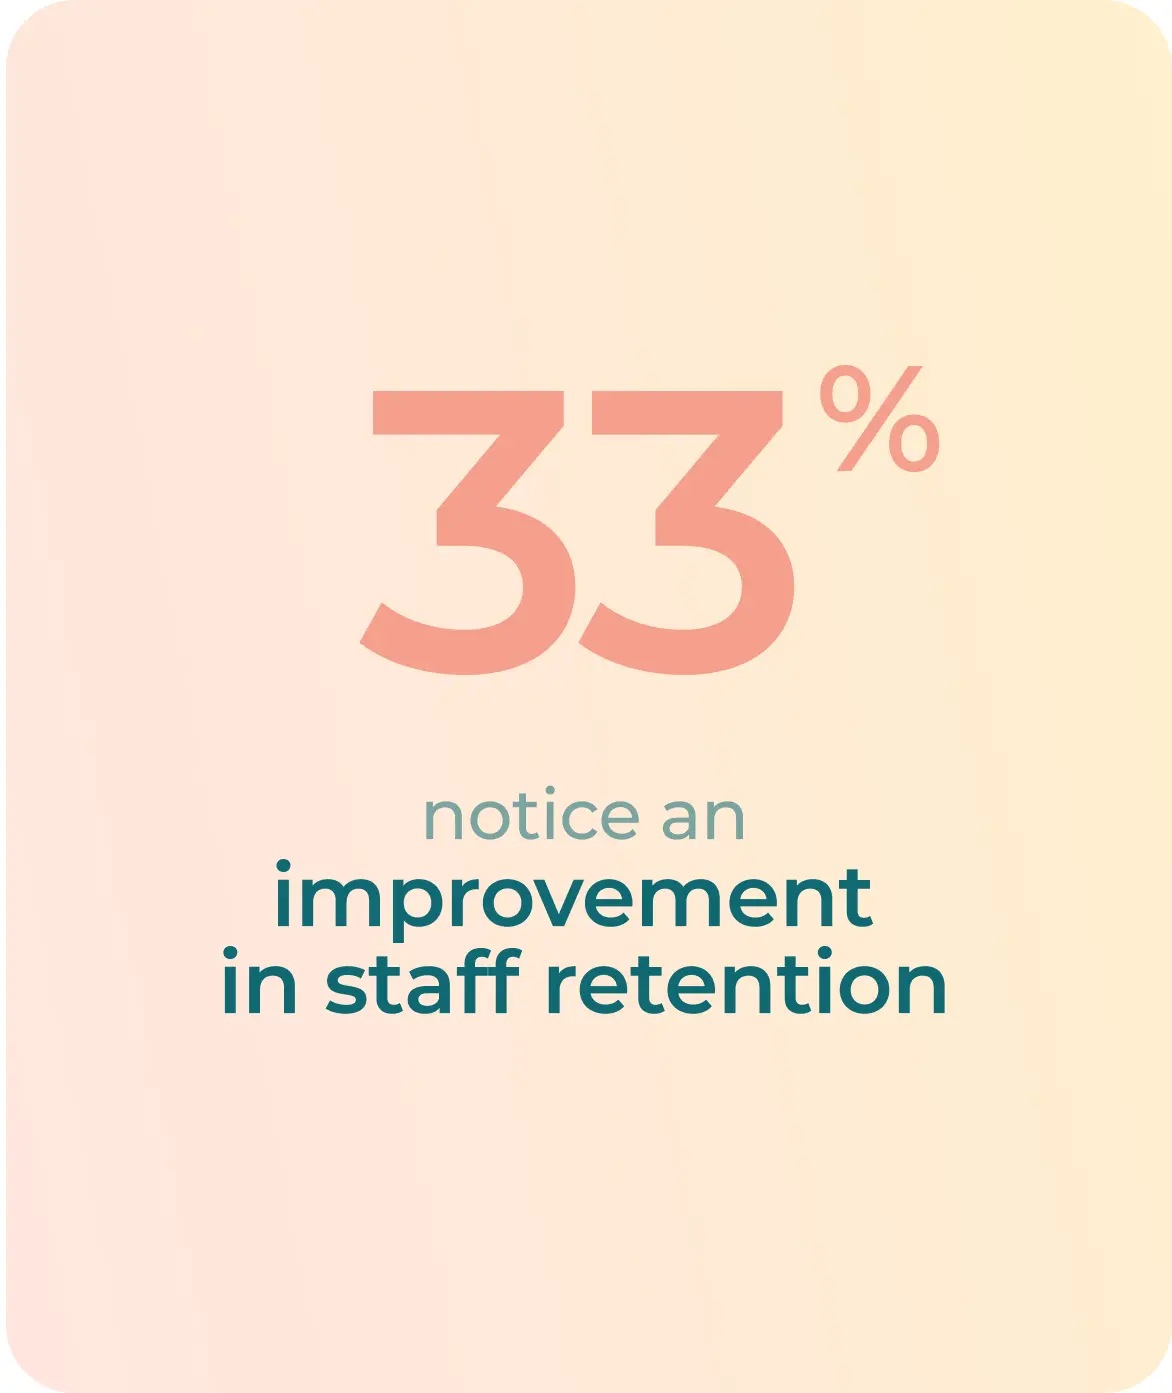 33% notice an improvement in staff retention